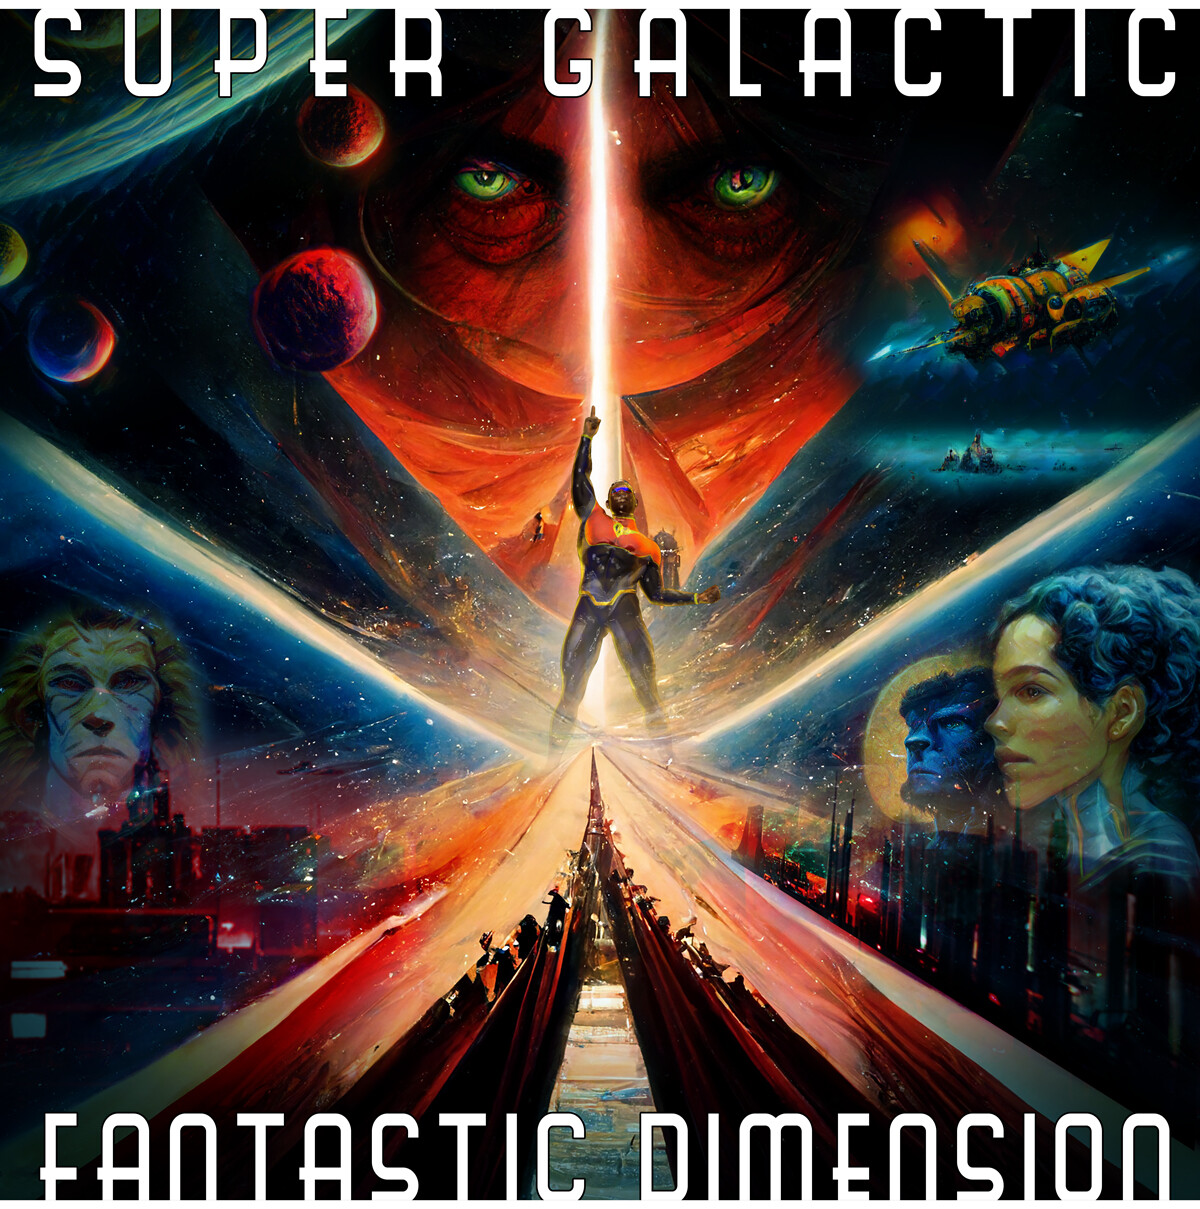  Super Galactic Fantastic Dimension poster art